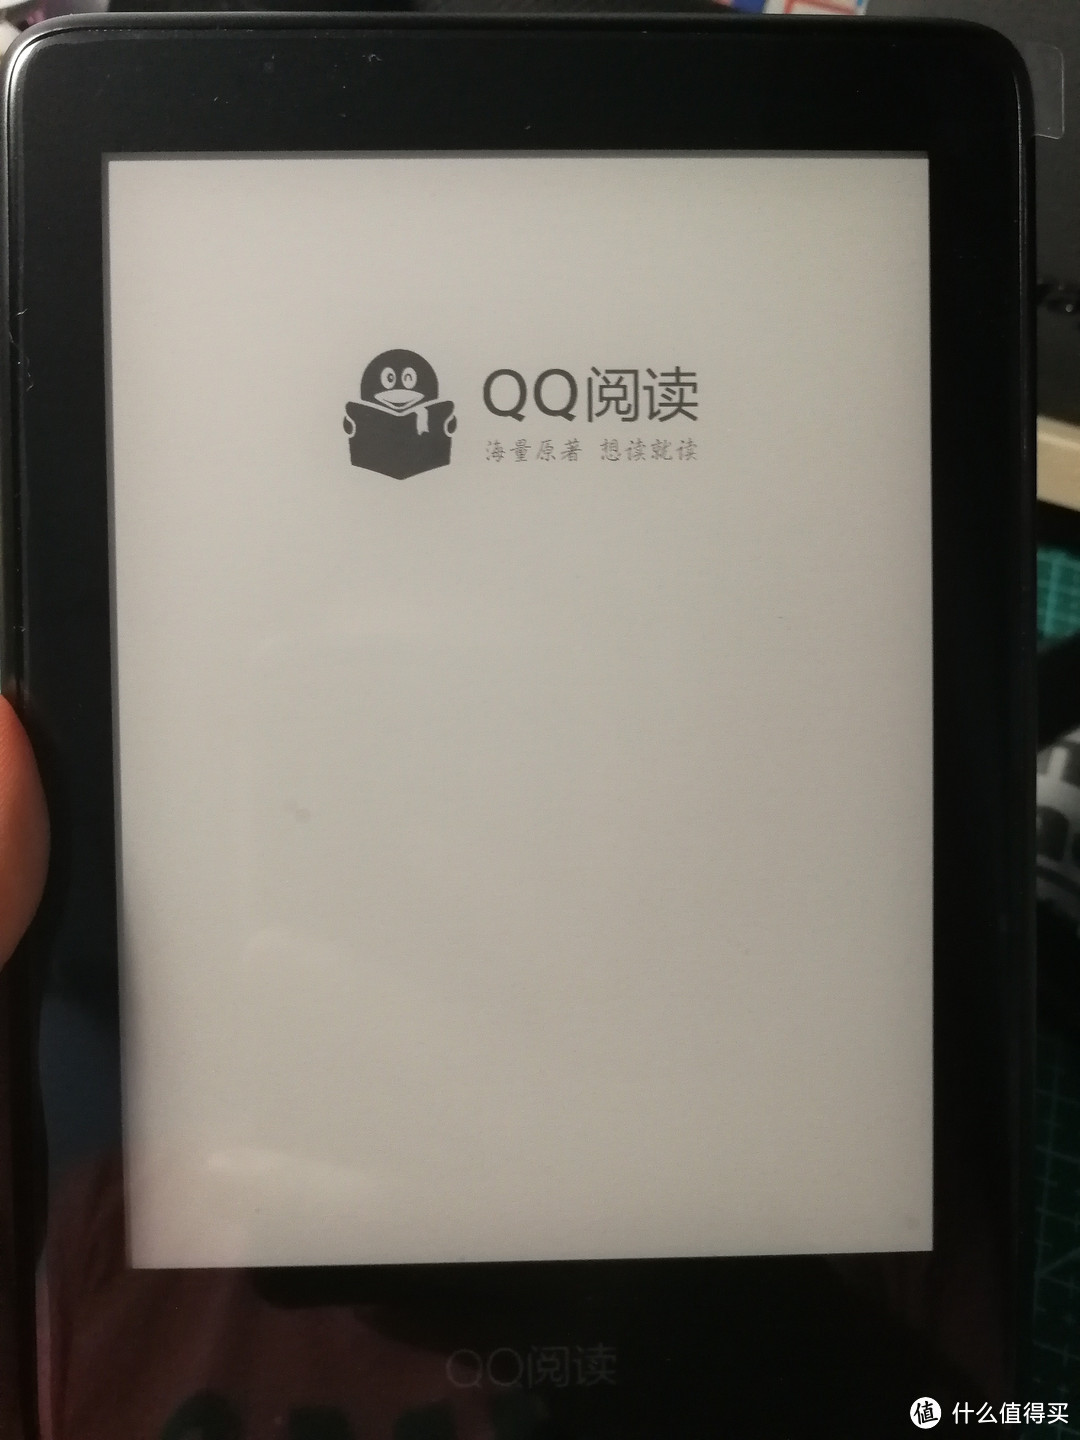 能读书的网文利器——评QQ阅读电纸书